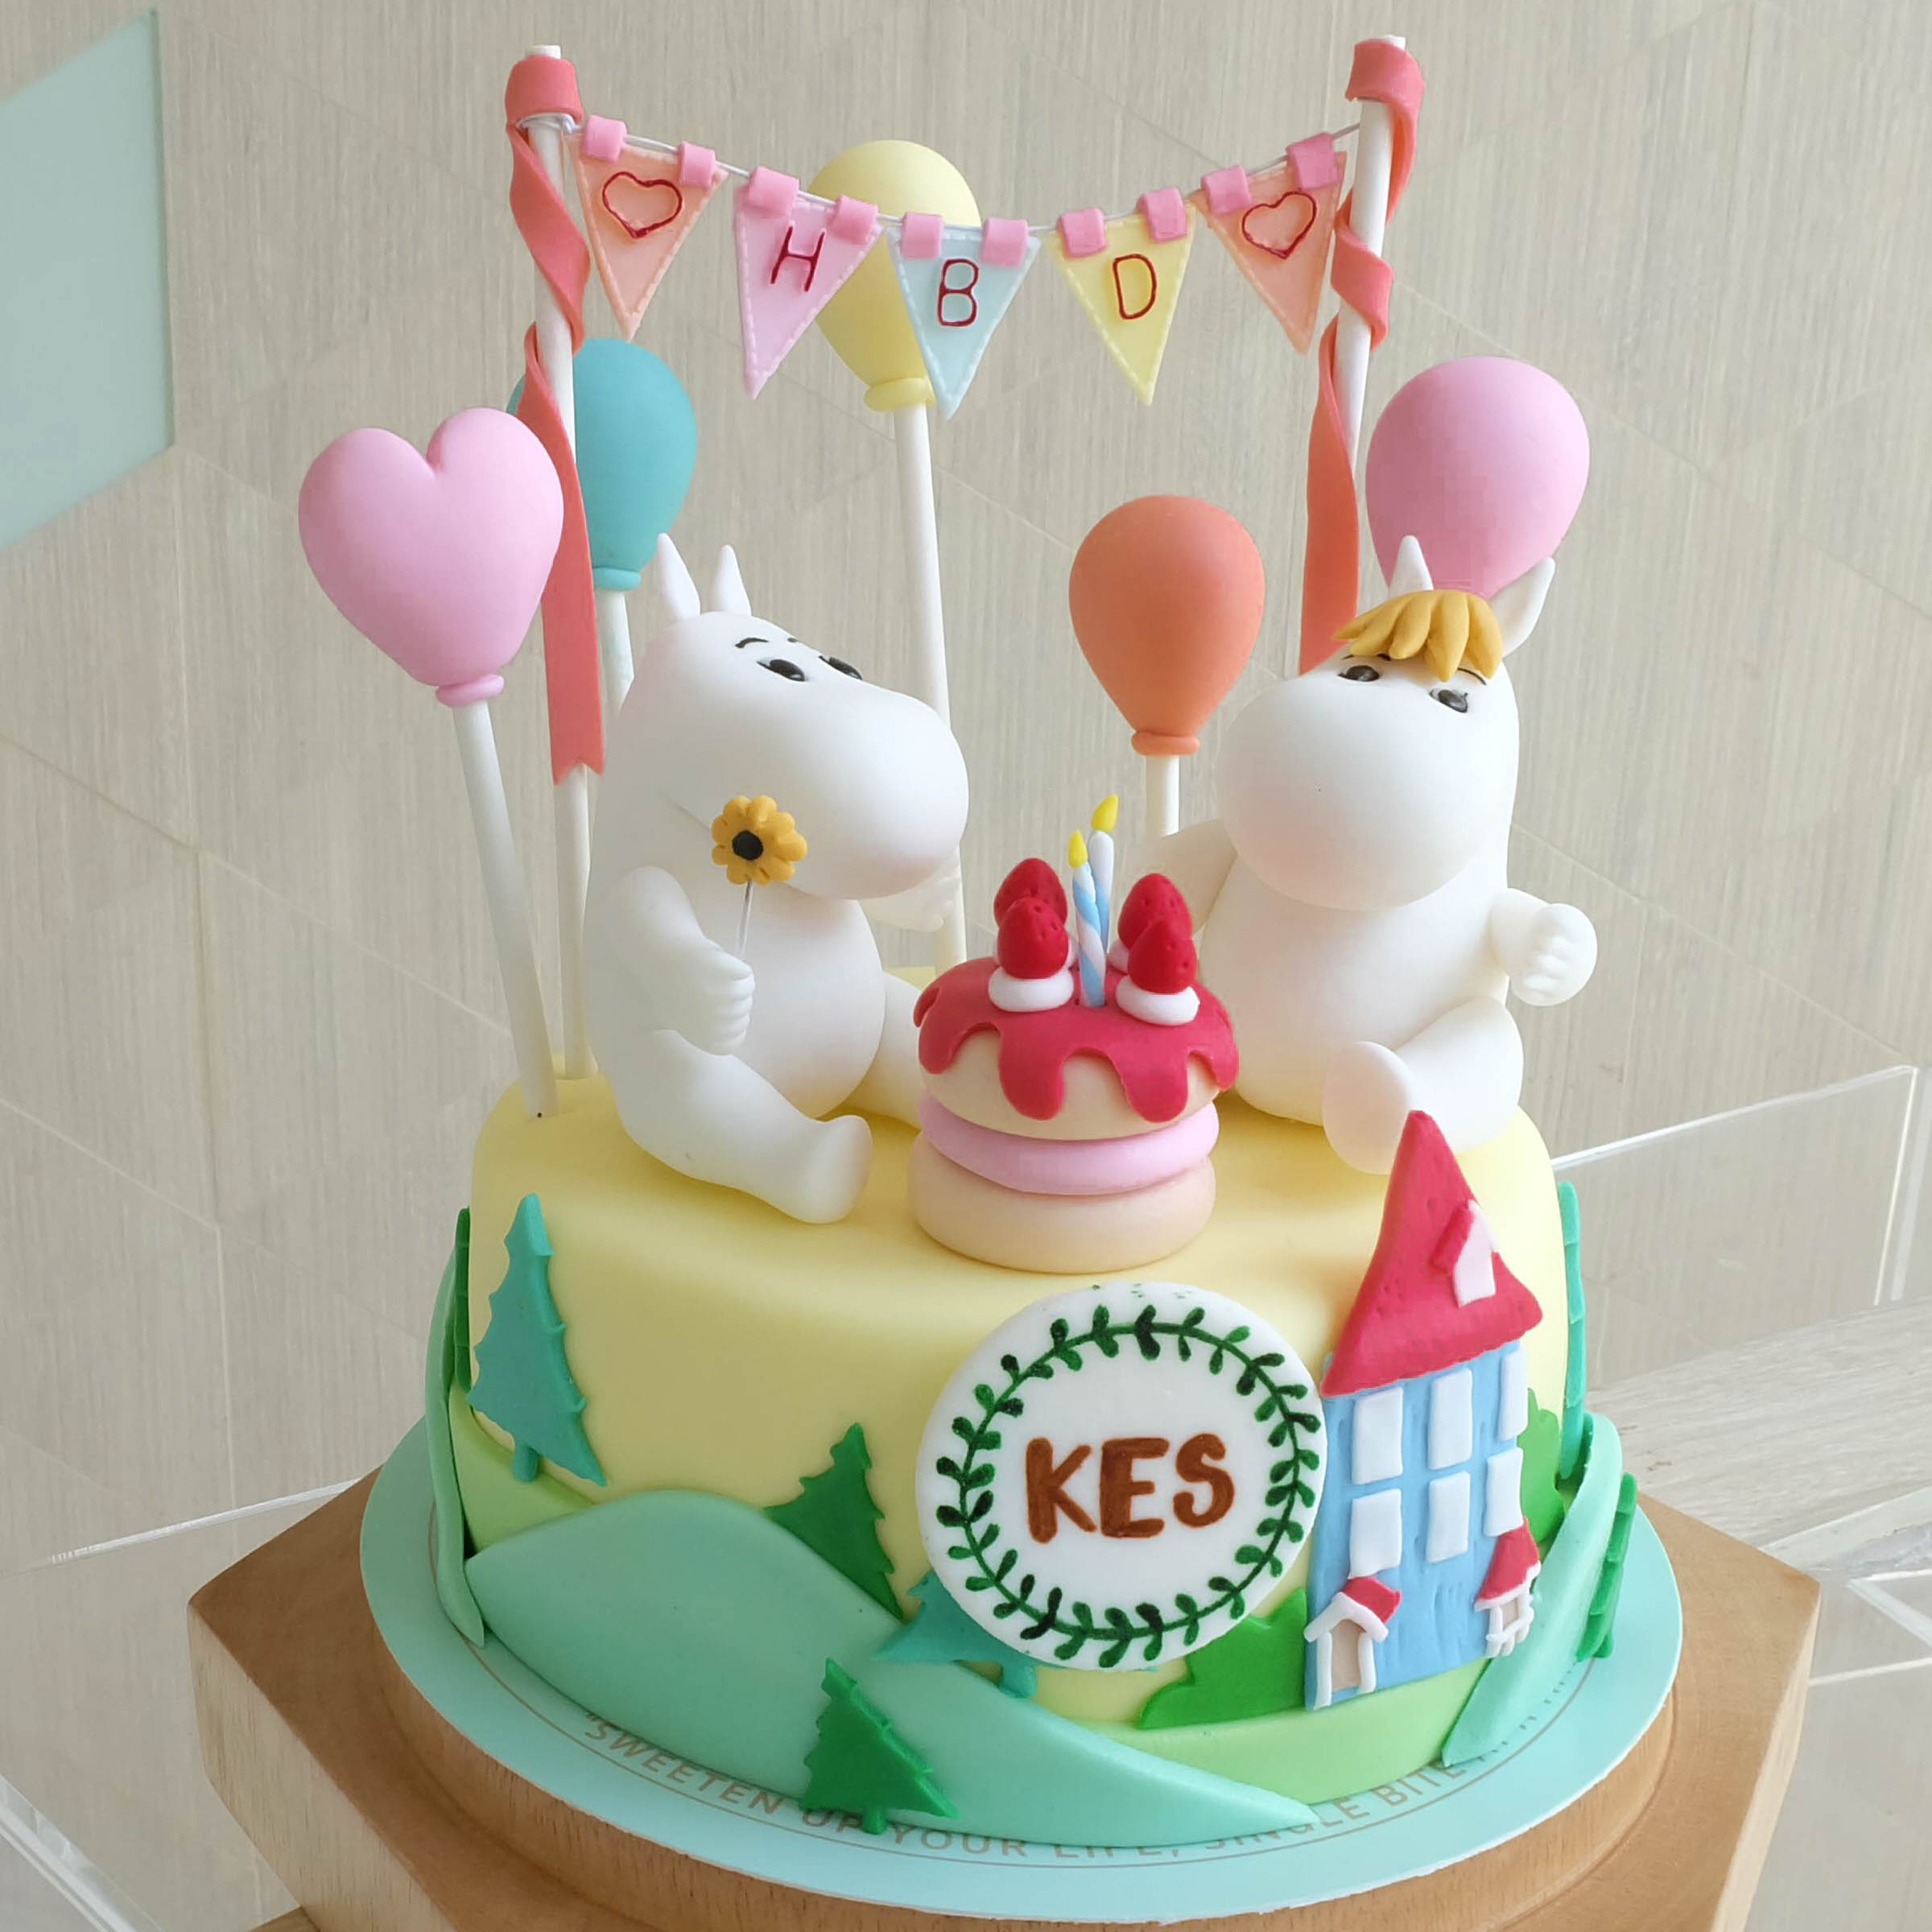 เค้กมูมิน เค้กการ์ตูน Moomin Cake